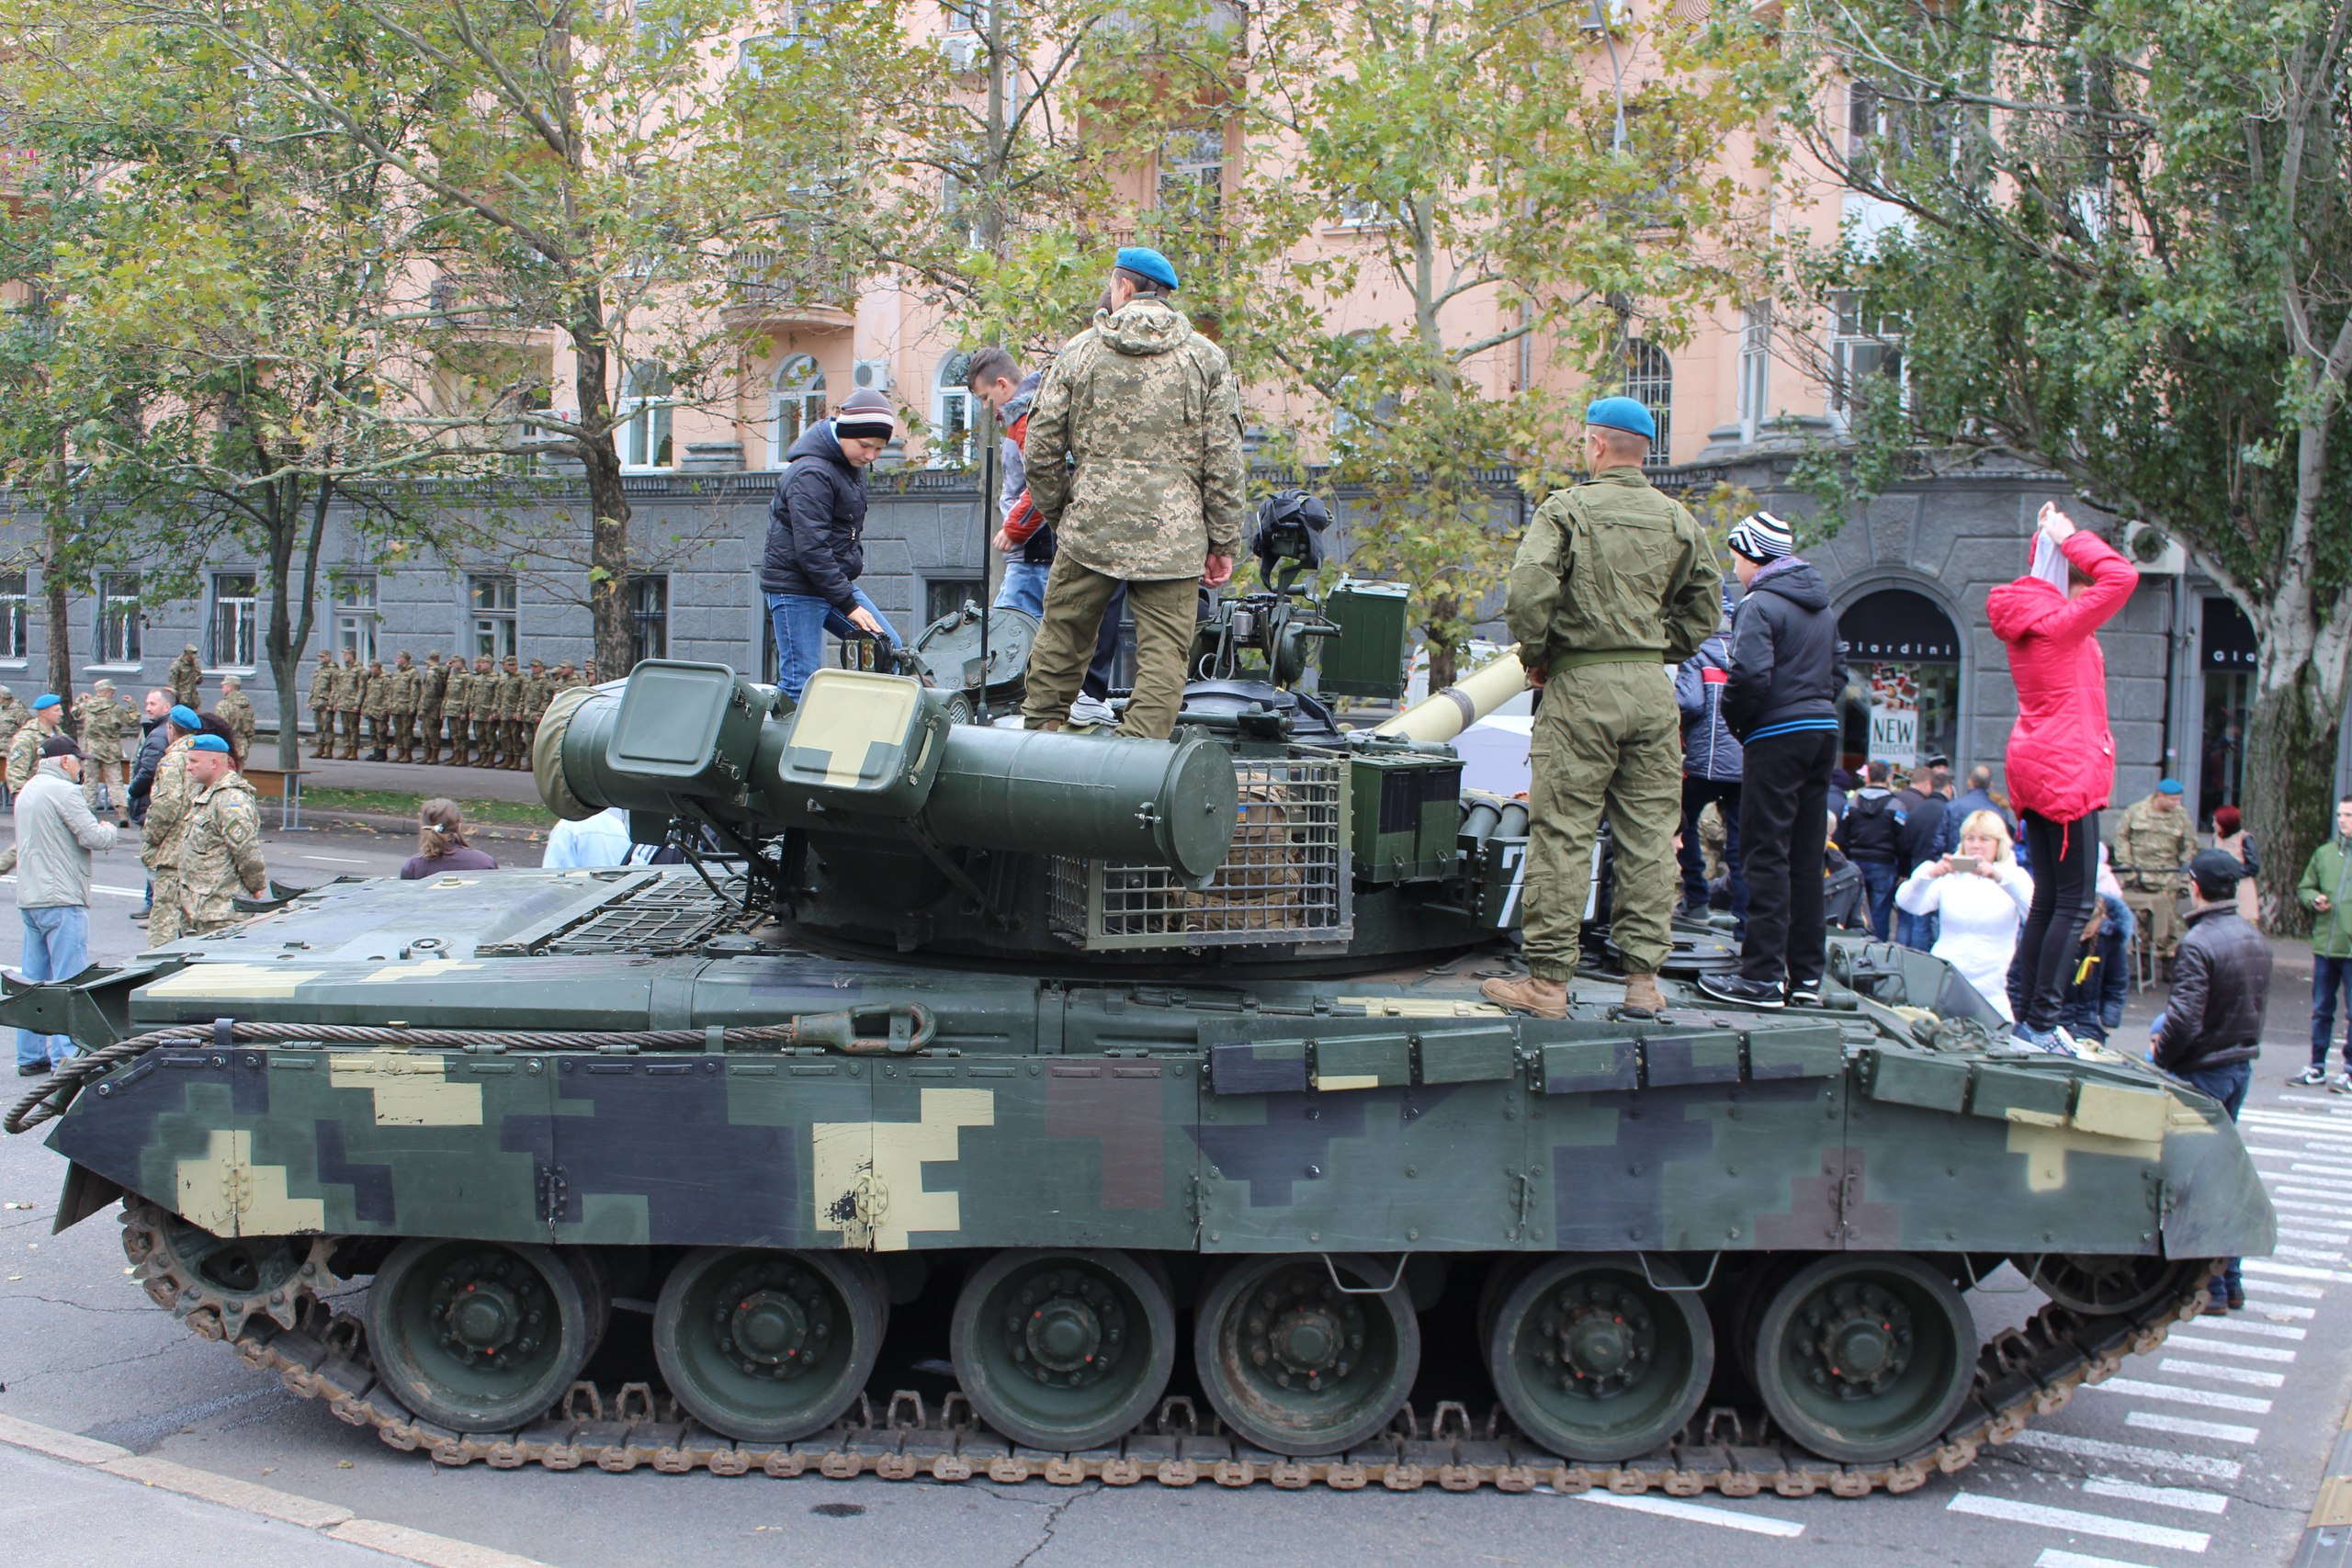 Миколаївці відсвяткували Покрову виставкою військової та рятувальної техінки